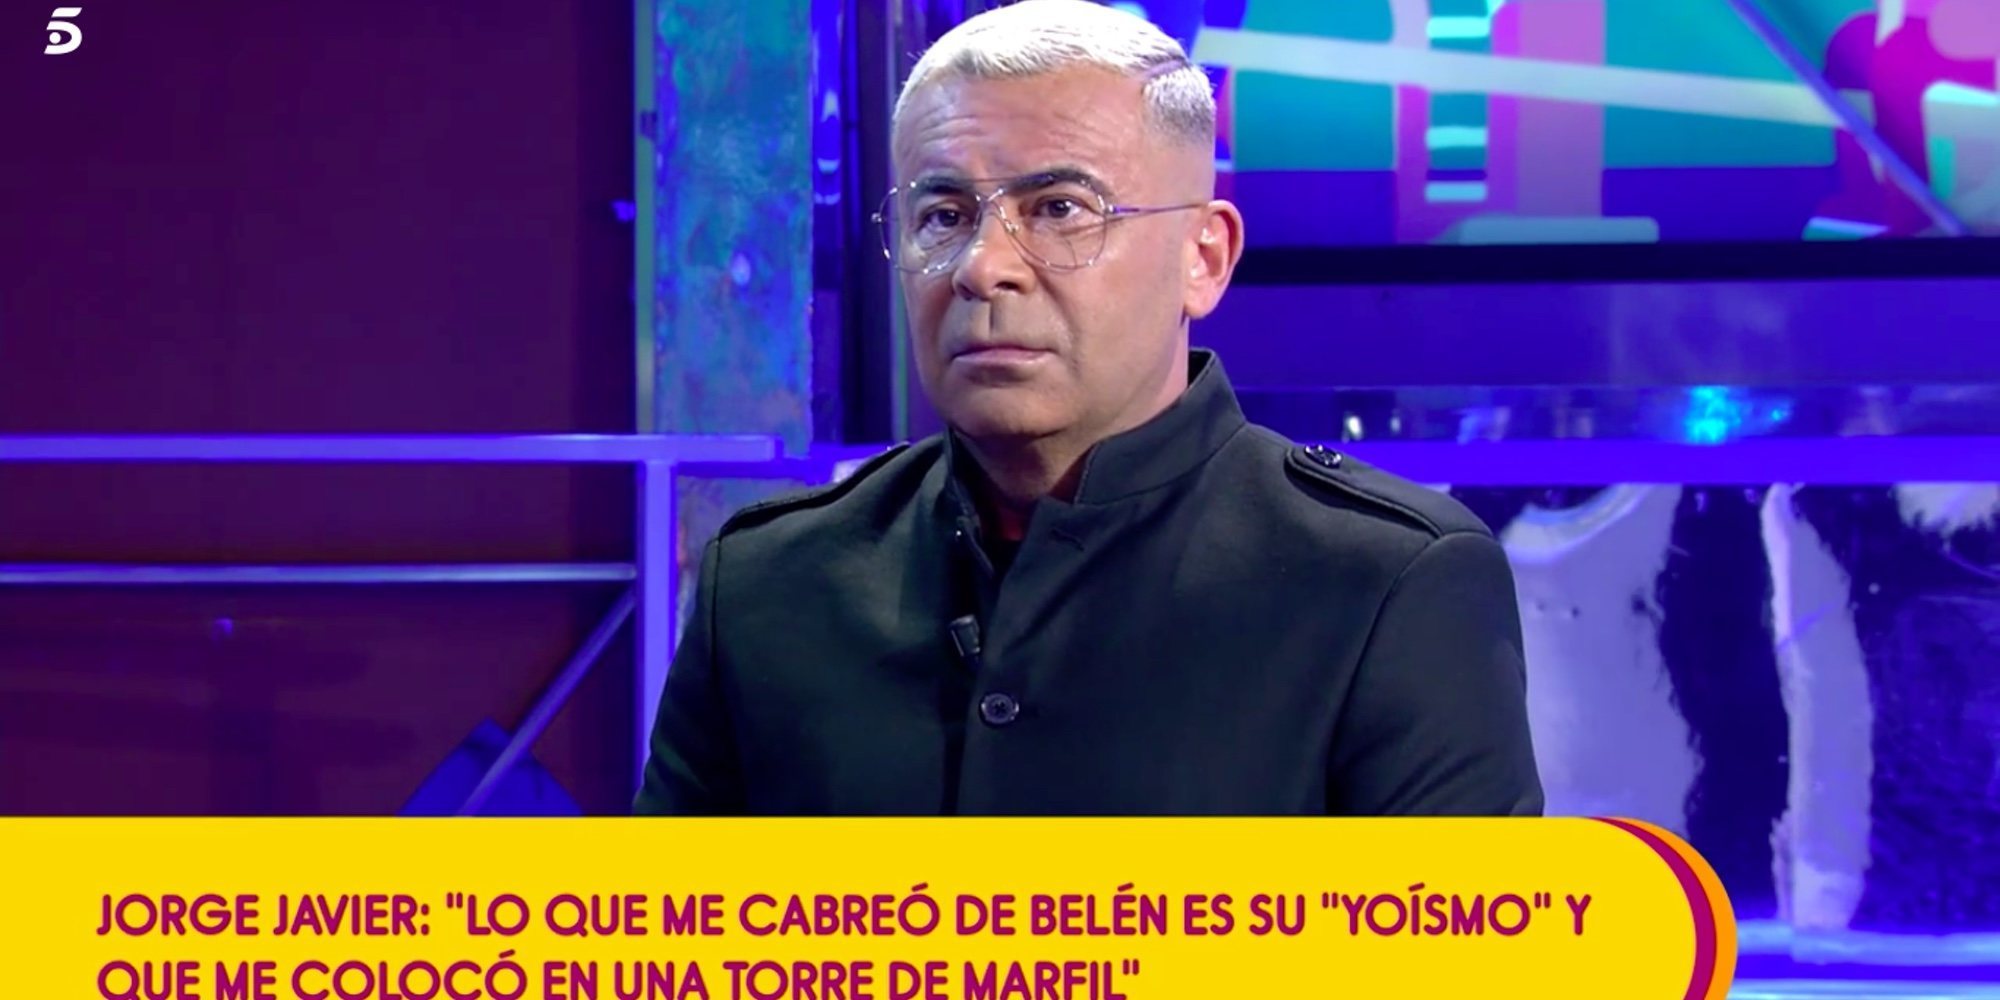 Jorge Javier Vázquez: "Belén Esteban ya no es pueblo. El pueblo no alterna con Rosalía ni cierra discotecas"